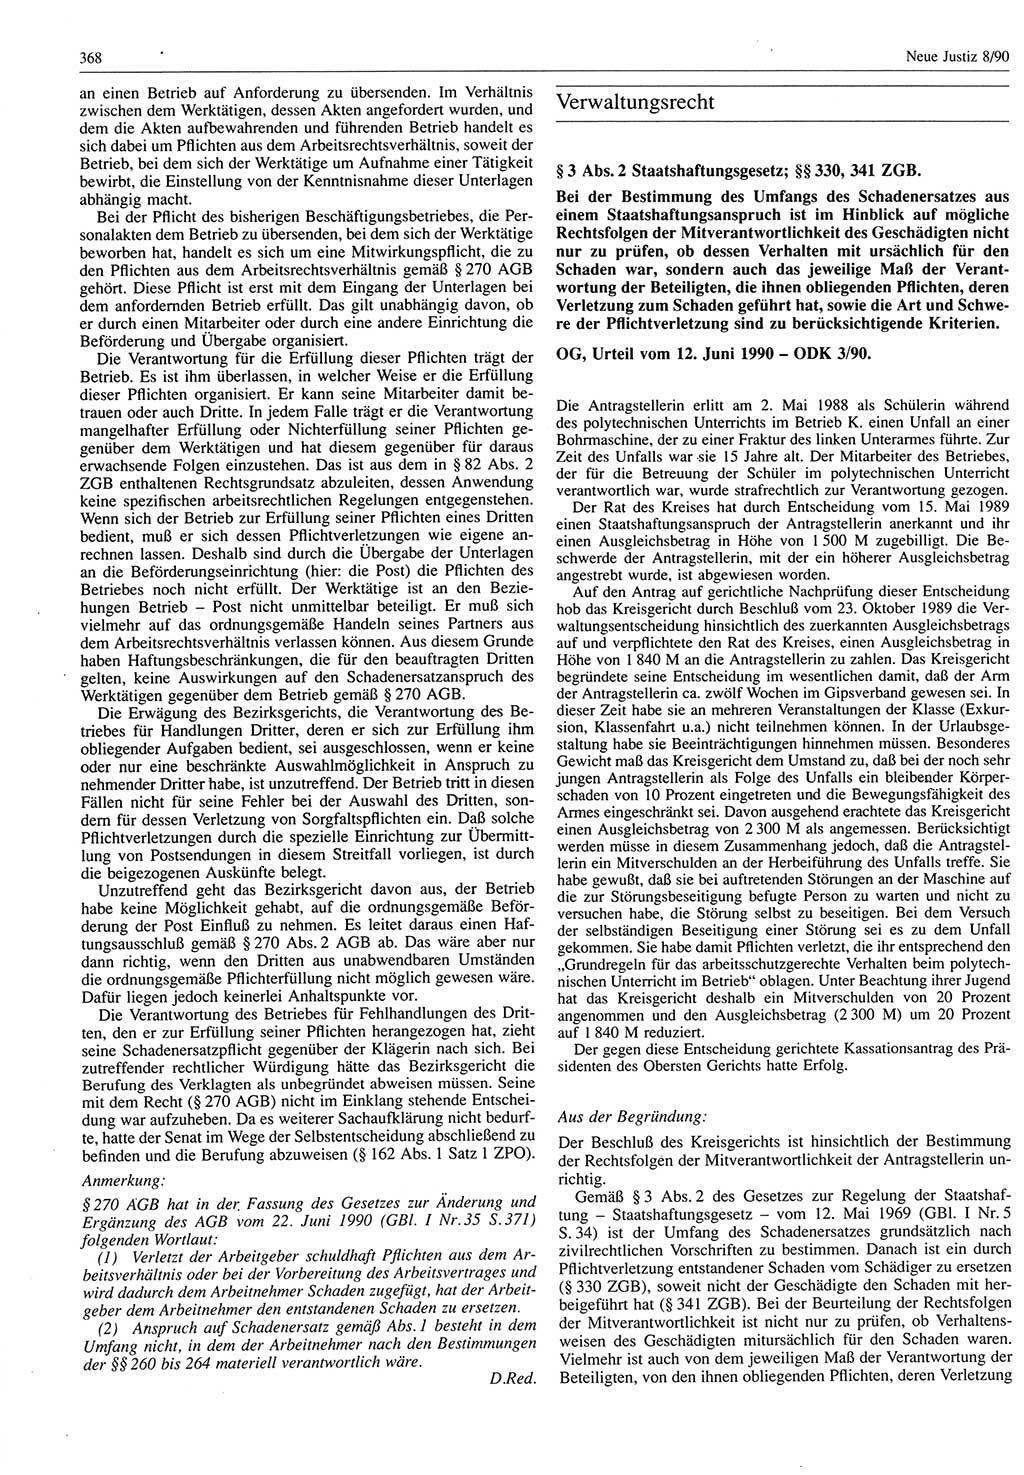 Neue Justiz (NJ), Zeitschrift für Rechtsetzung und Rechtsanwendung [Deutsche Demokratische Republik (DDR)], 44. Jahrgang 1990, Seite 368 (NJ DDR 1990, S. 368)